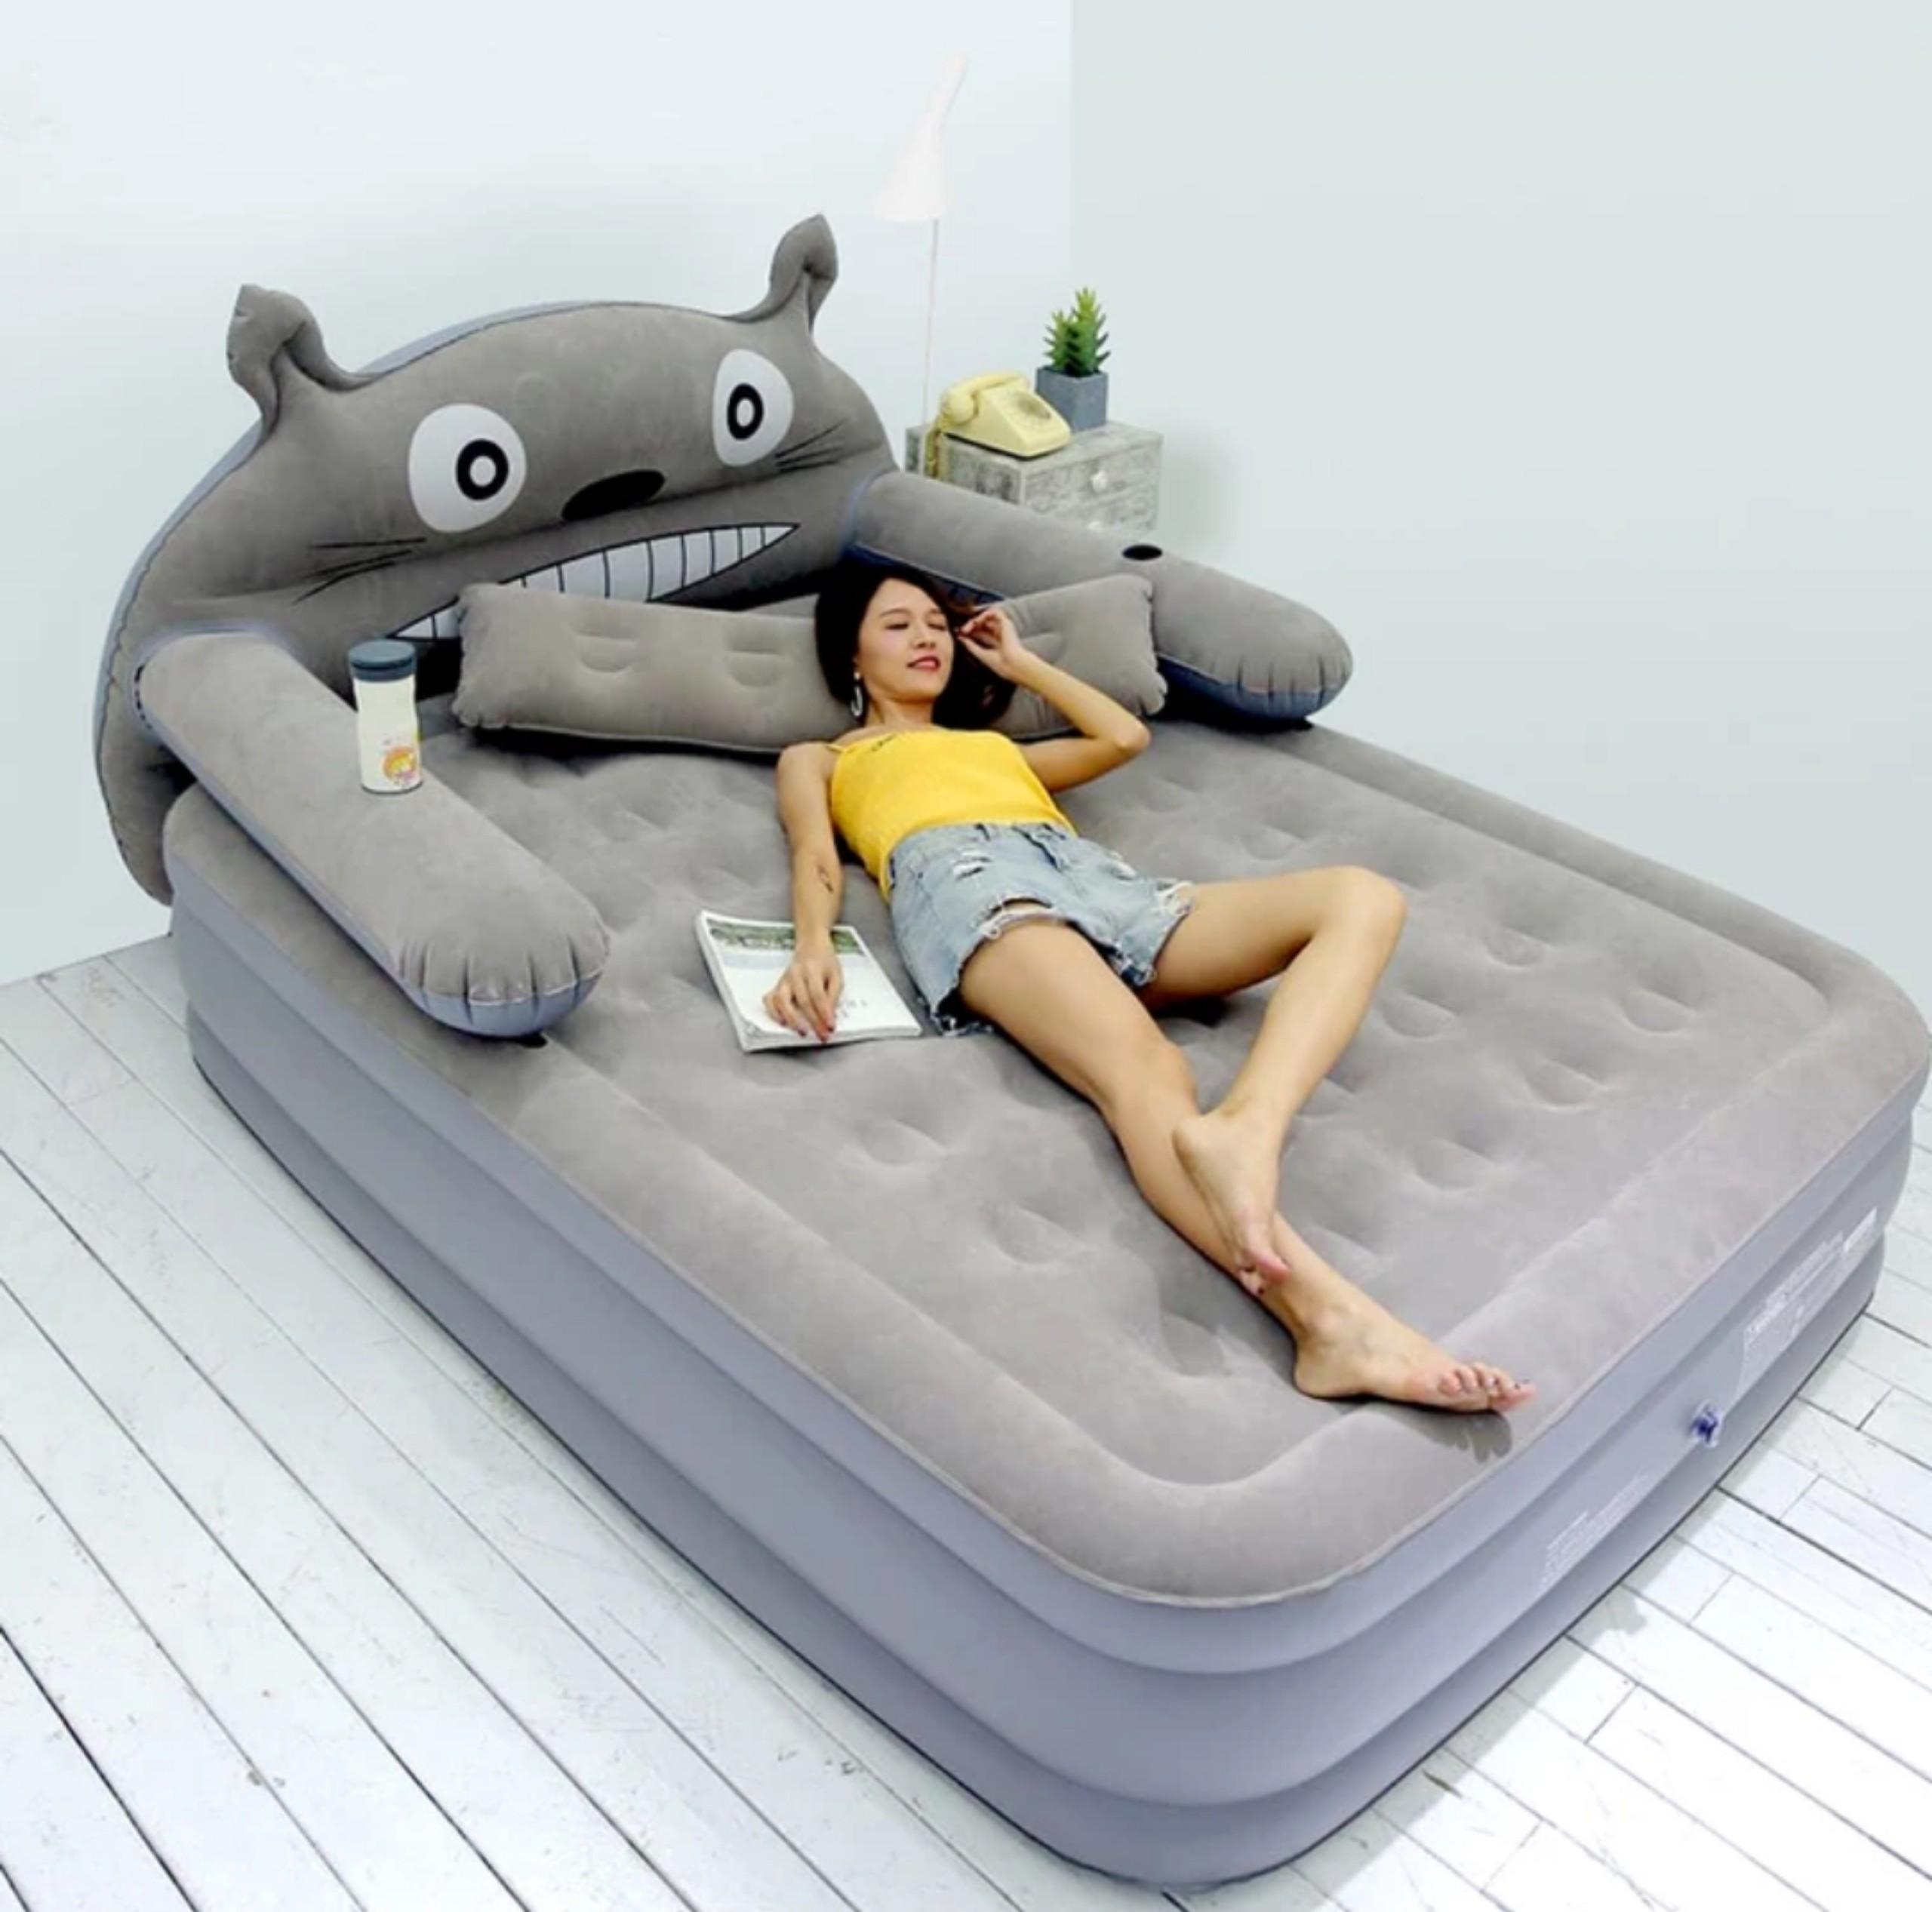 Bộ sản phẩm giường hơi hình mèo xám cao (150 x 220 x 40cm) Tặng kèm bơm điện, gối, bịt mắt, bịt tai, keo và miếng vá